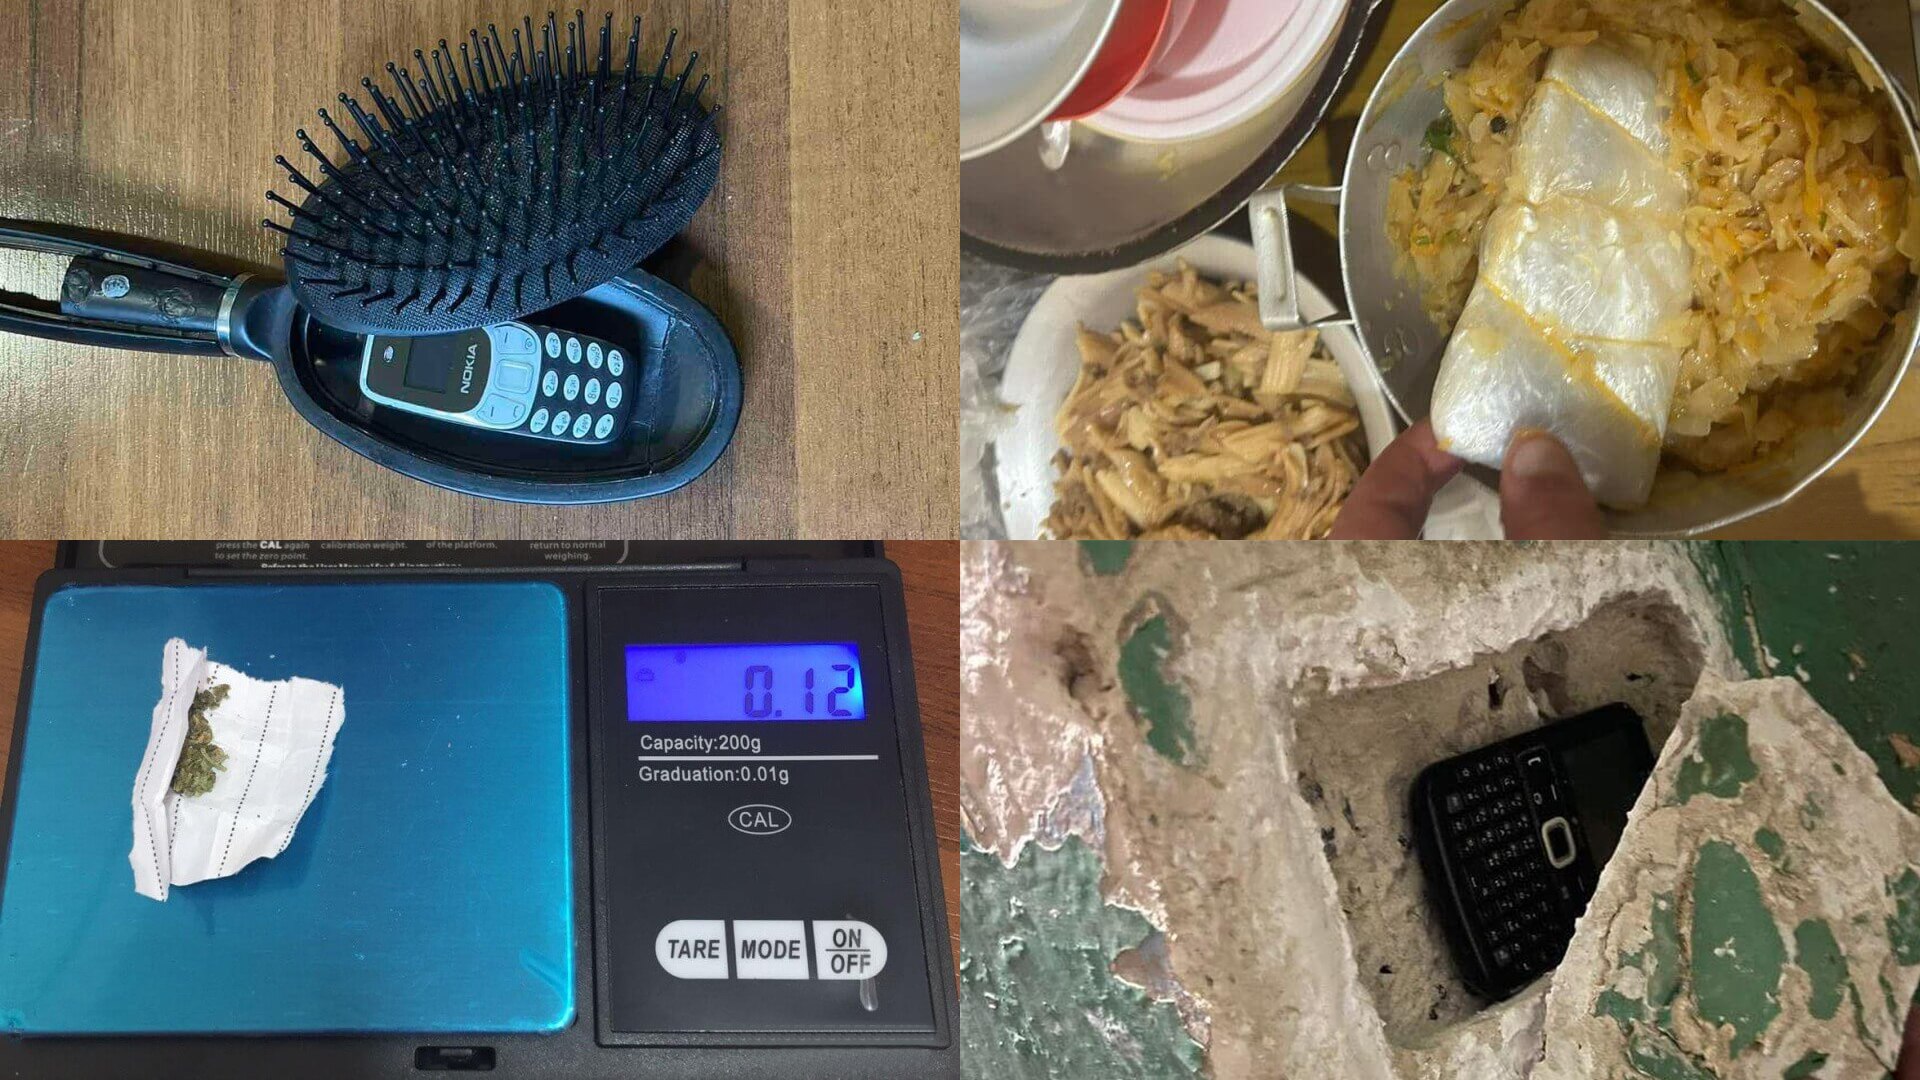 Թմրամիջոցներ, wi-fi սարքեր, հեռախոսներ․ ՔԿՀ-ներում հայտնաբերված արգելված իրերի փետրվարի հաշվետվությունը